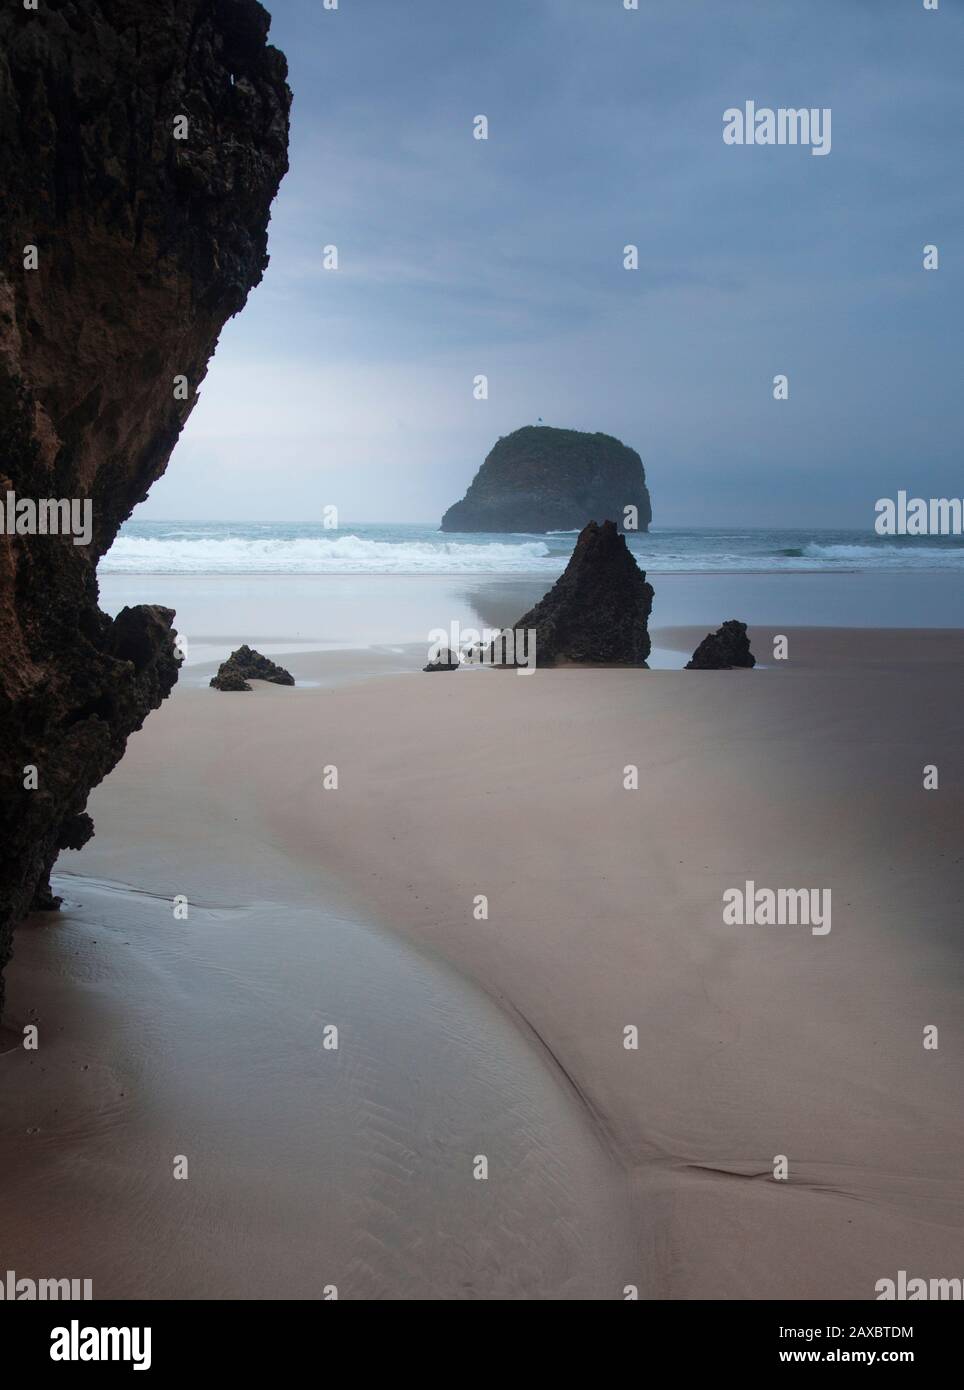 Rocks on tranquil ocean beach Borizo Beach Asturias Spain Stock Photo